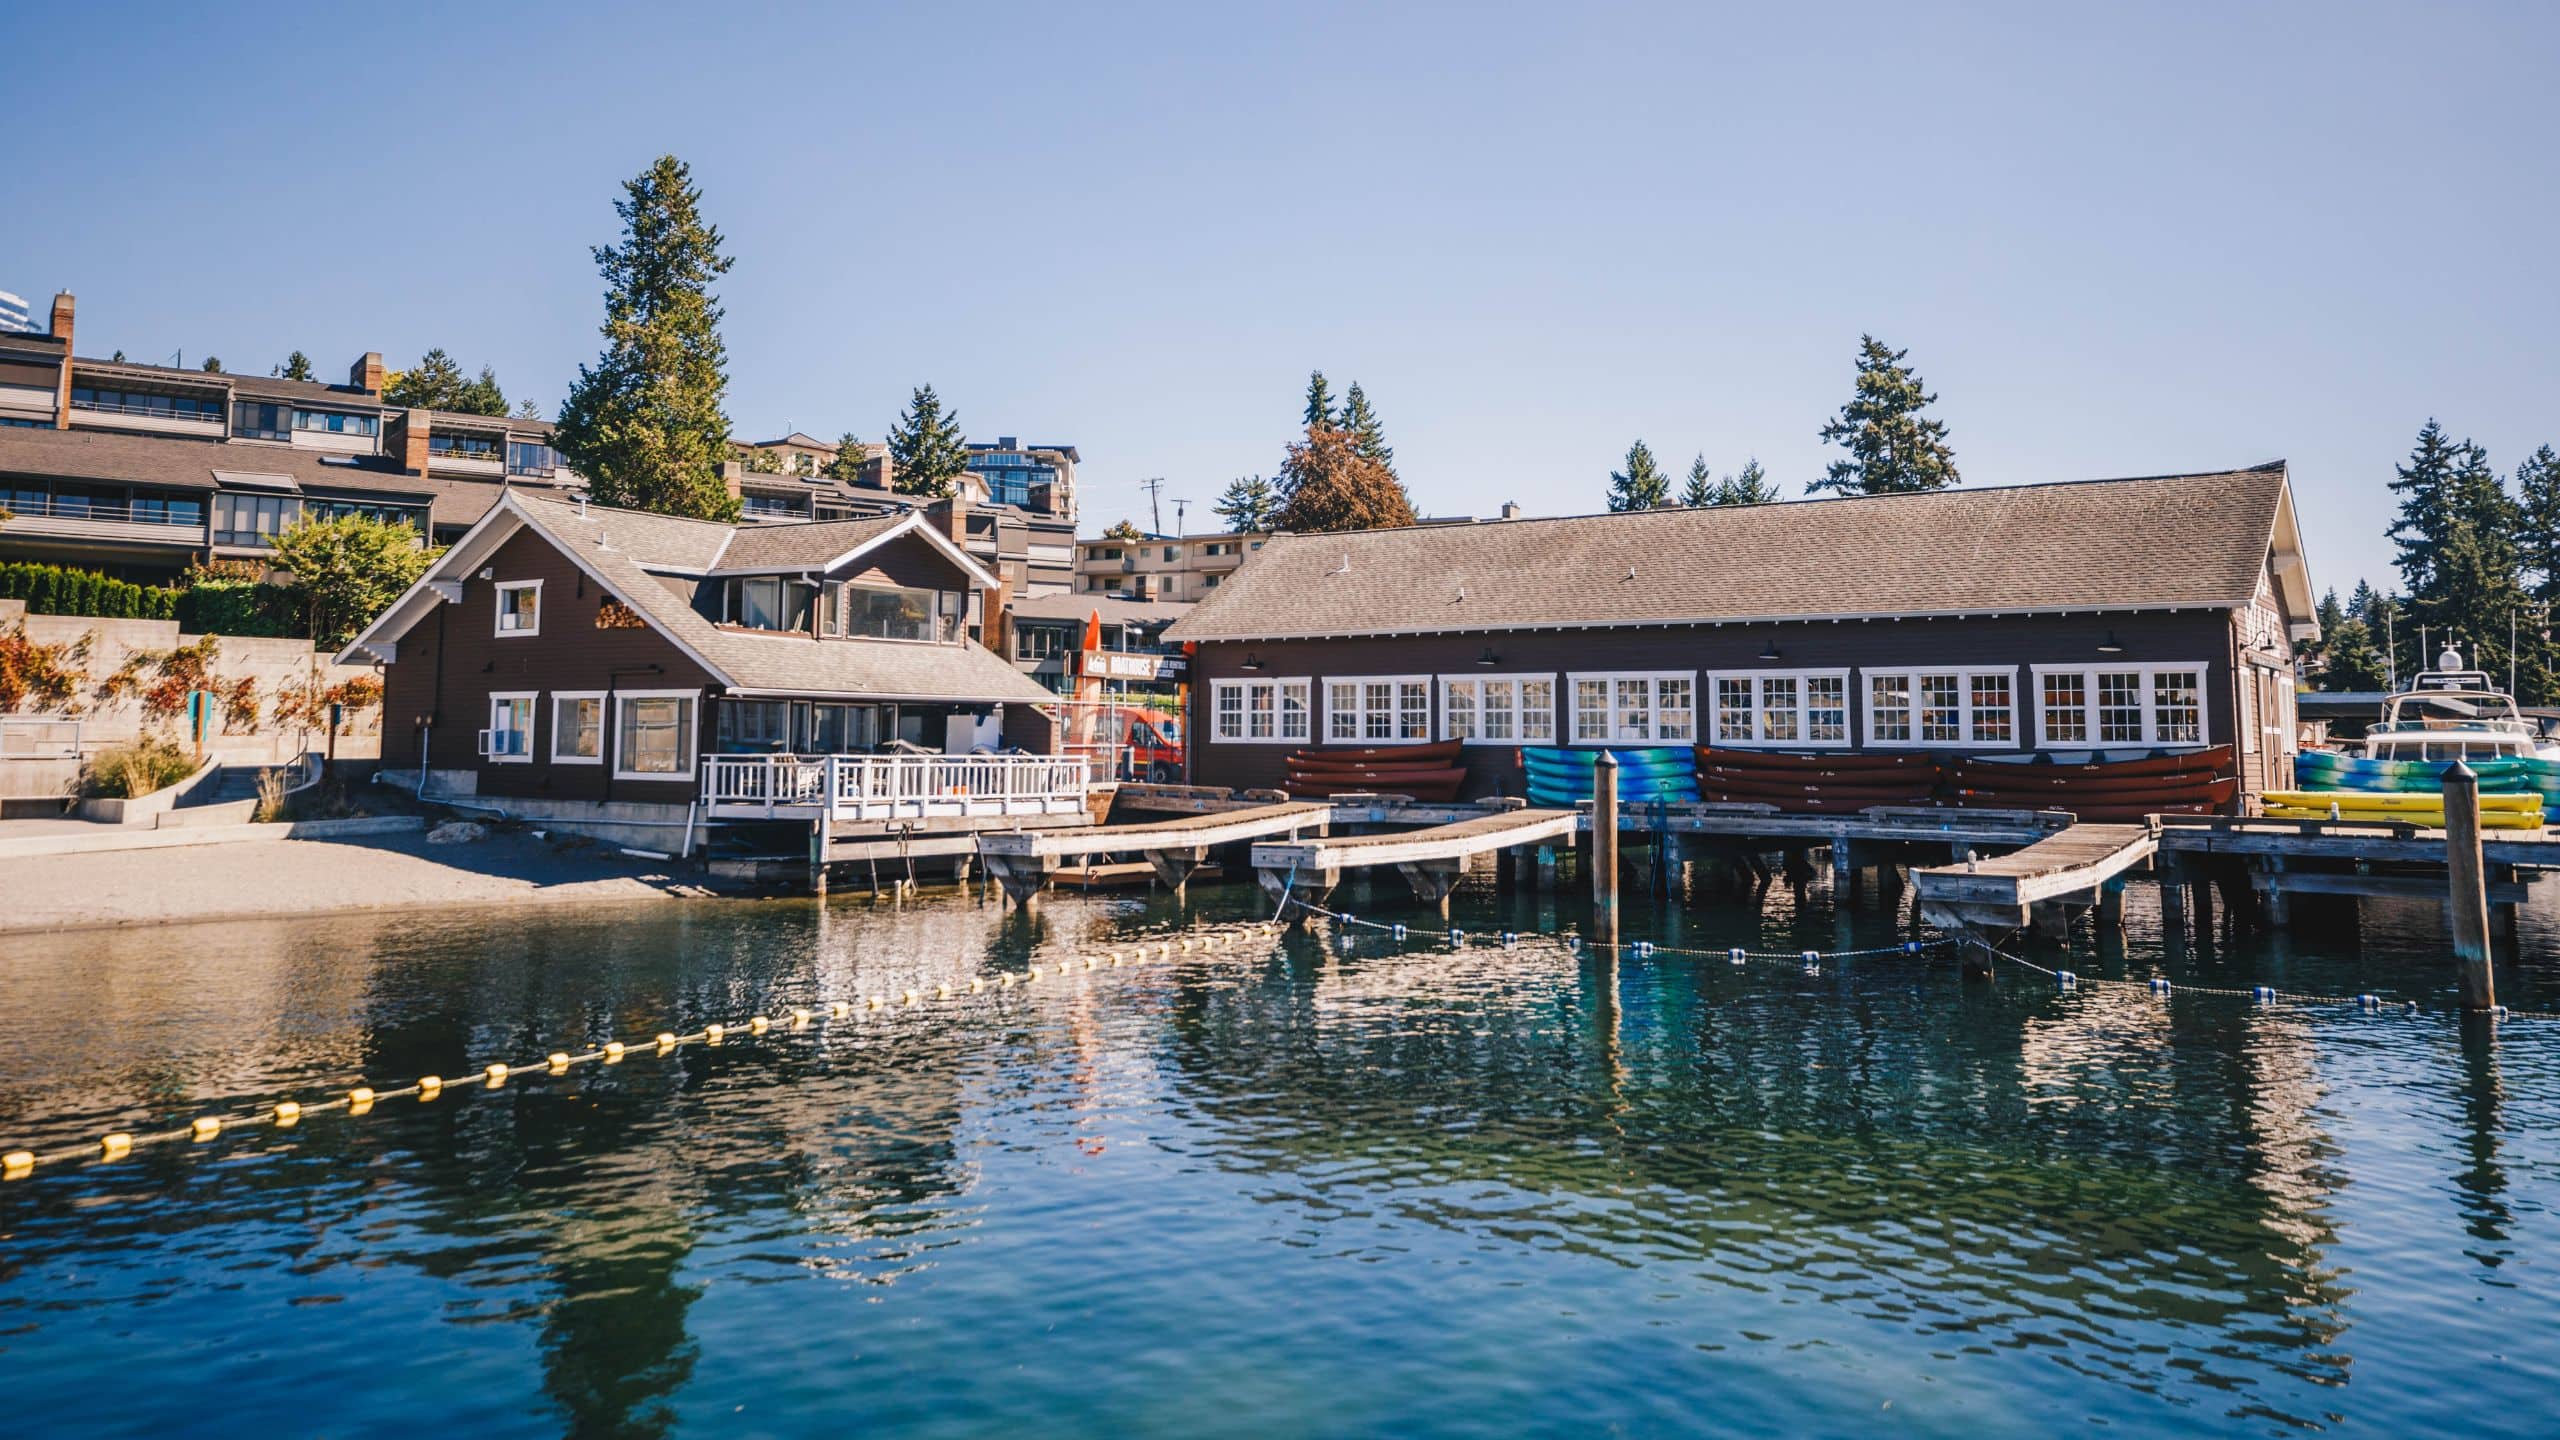 Hyatt Regency Bellevue on Seattle's Eastside Meydenbauer Bay Park Boat House